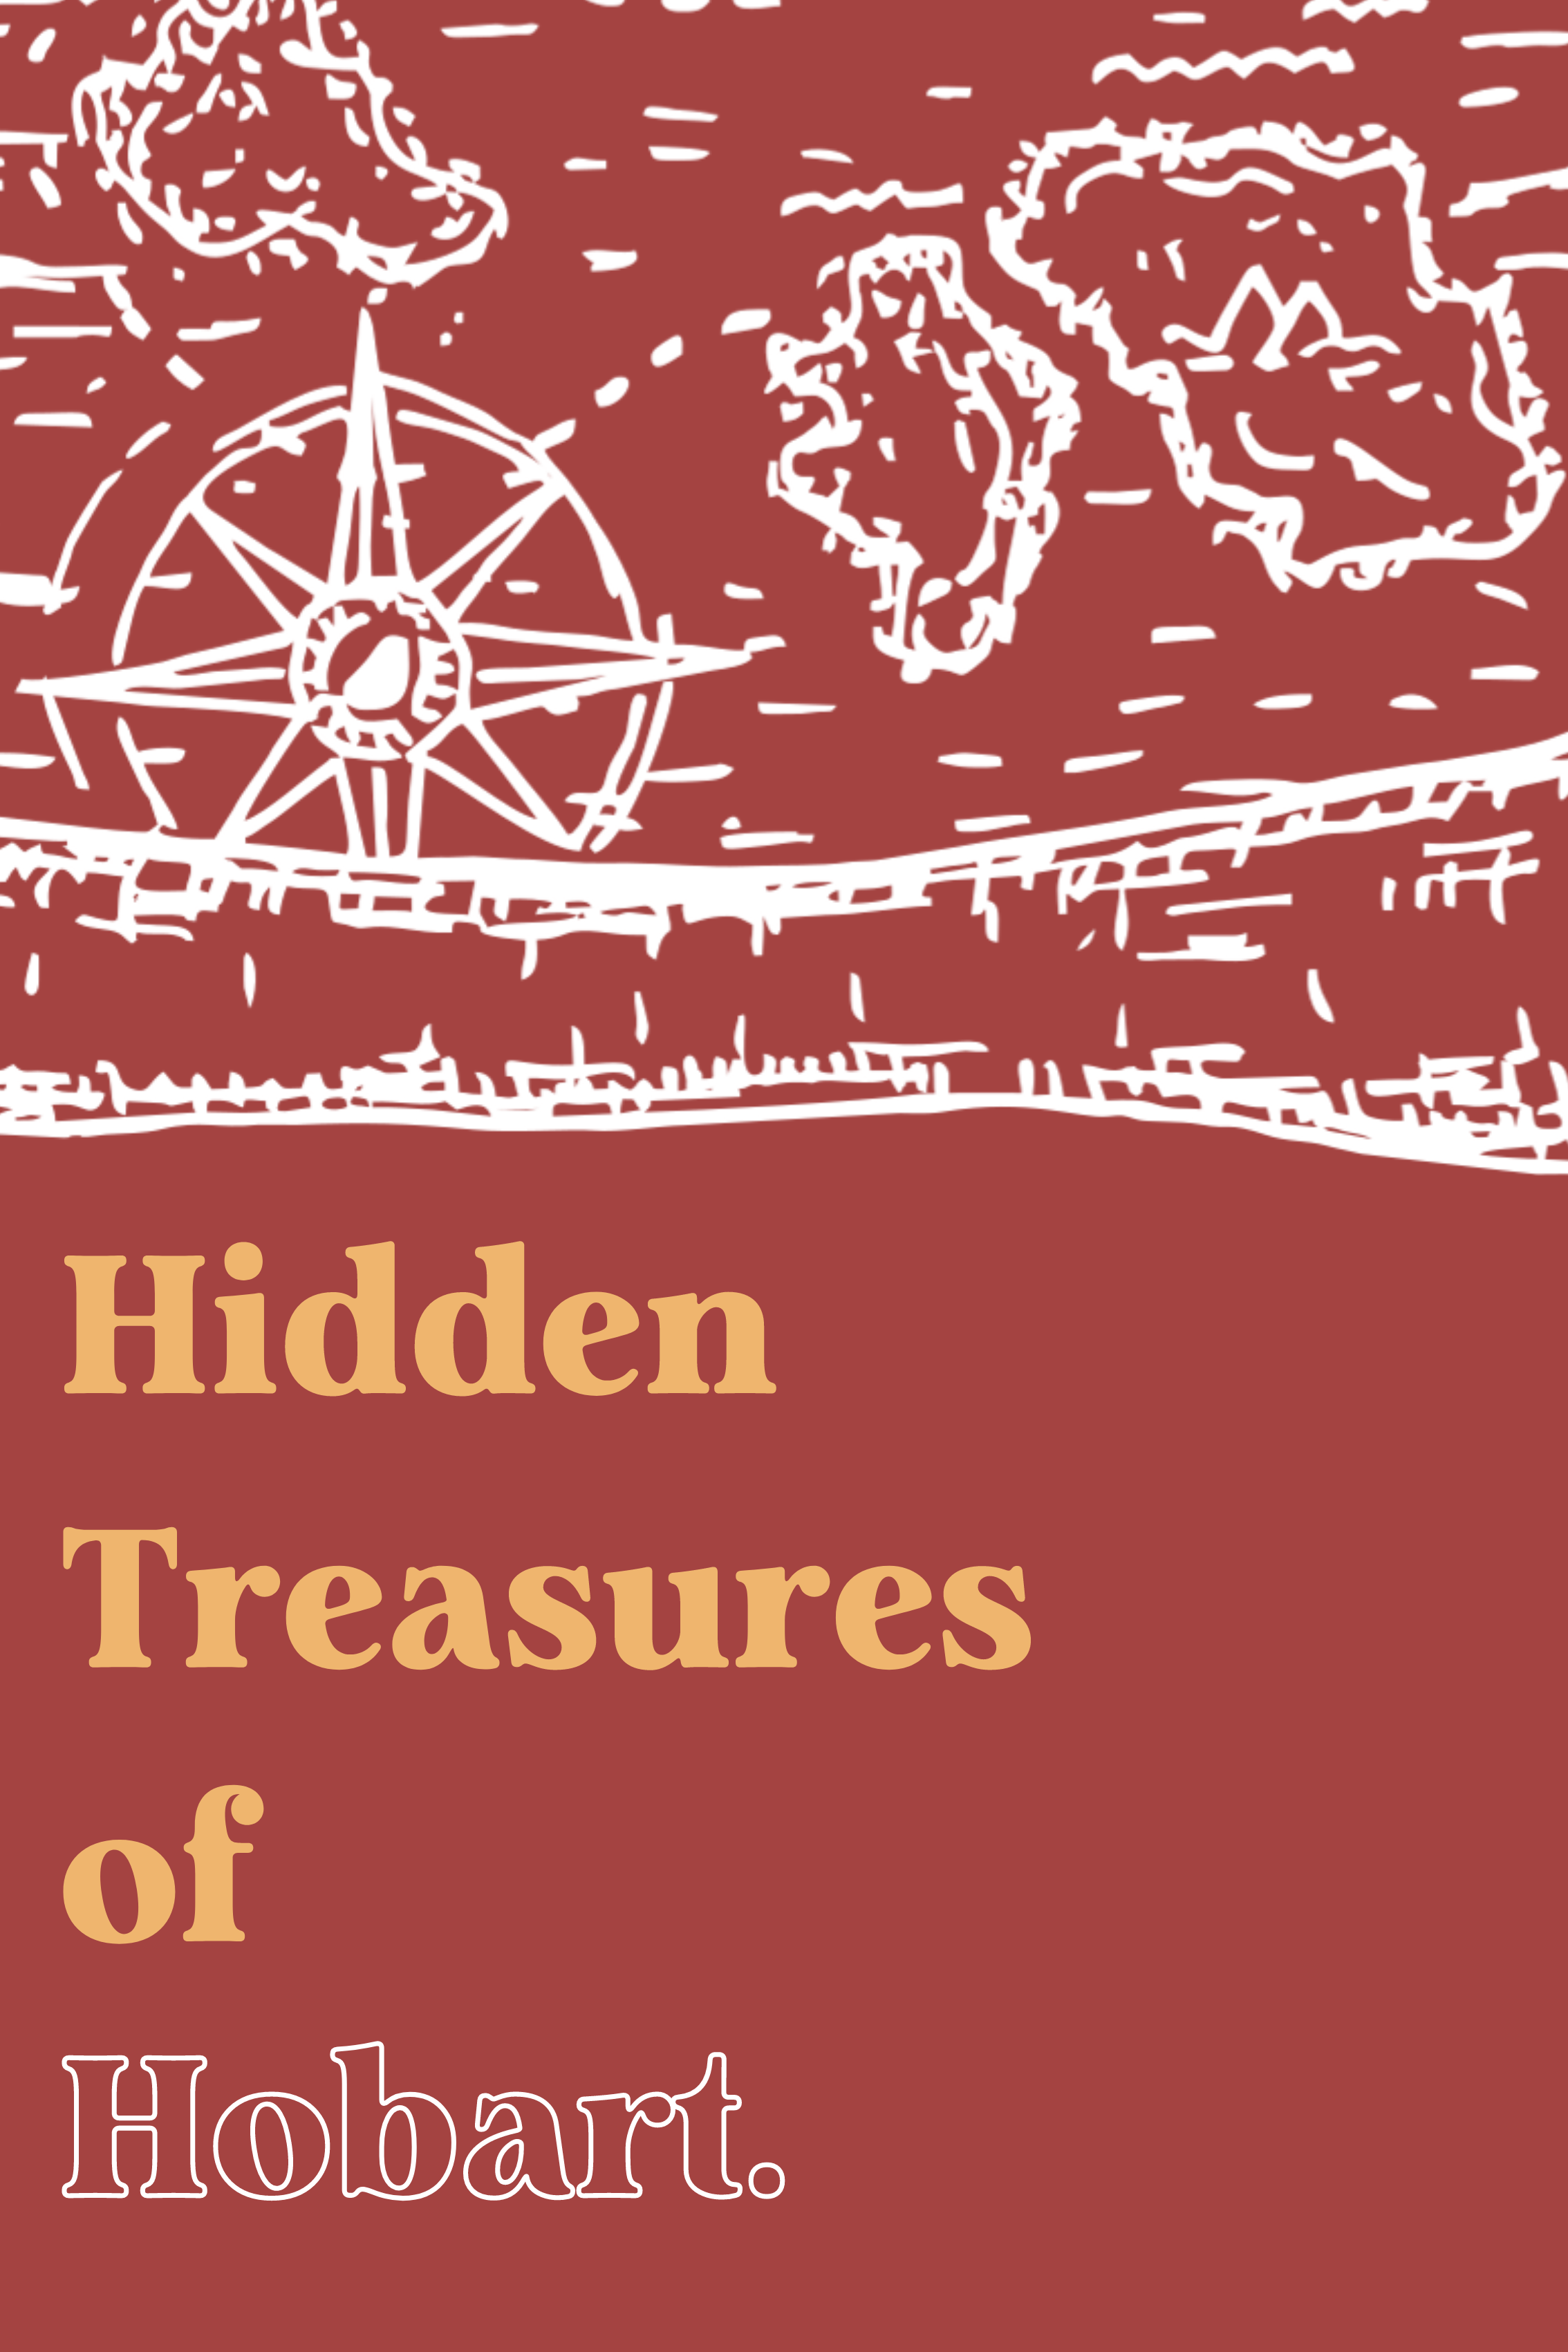 Hidden Treasures of Hobart